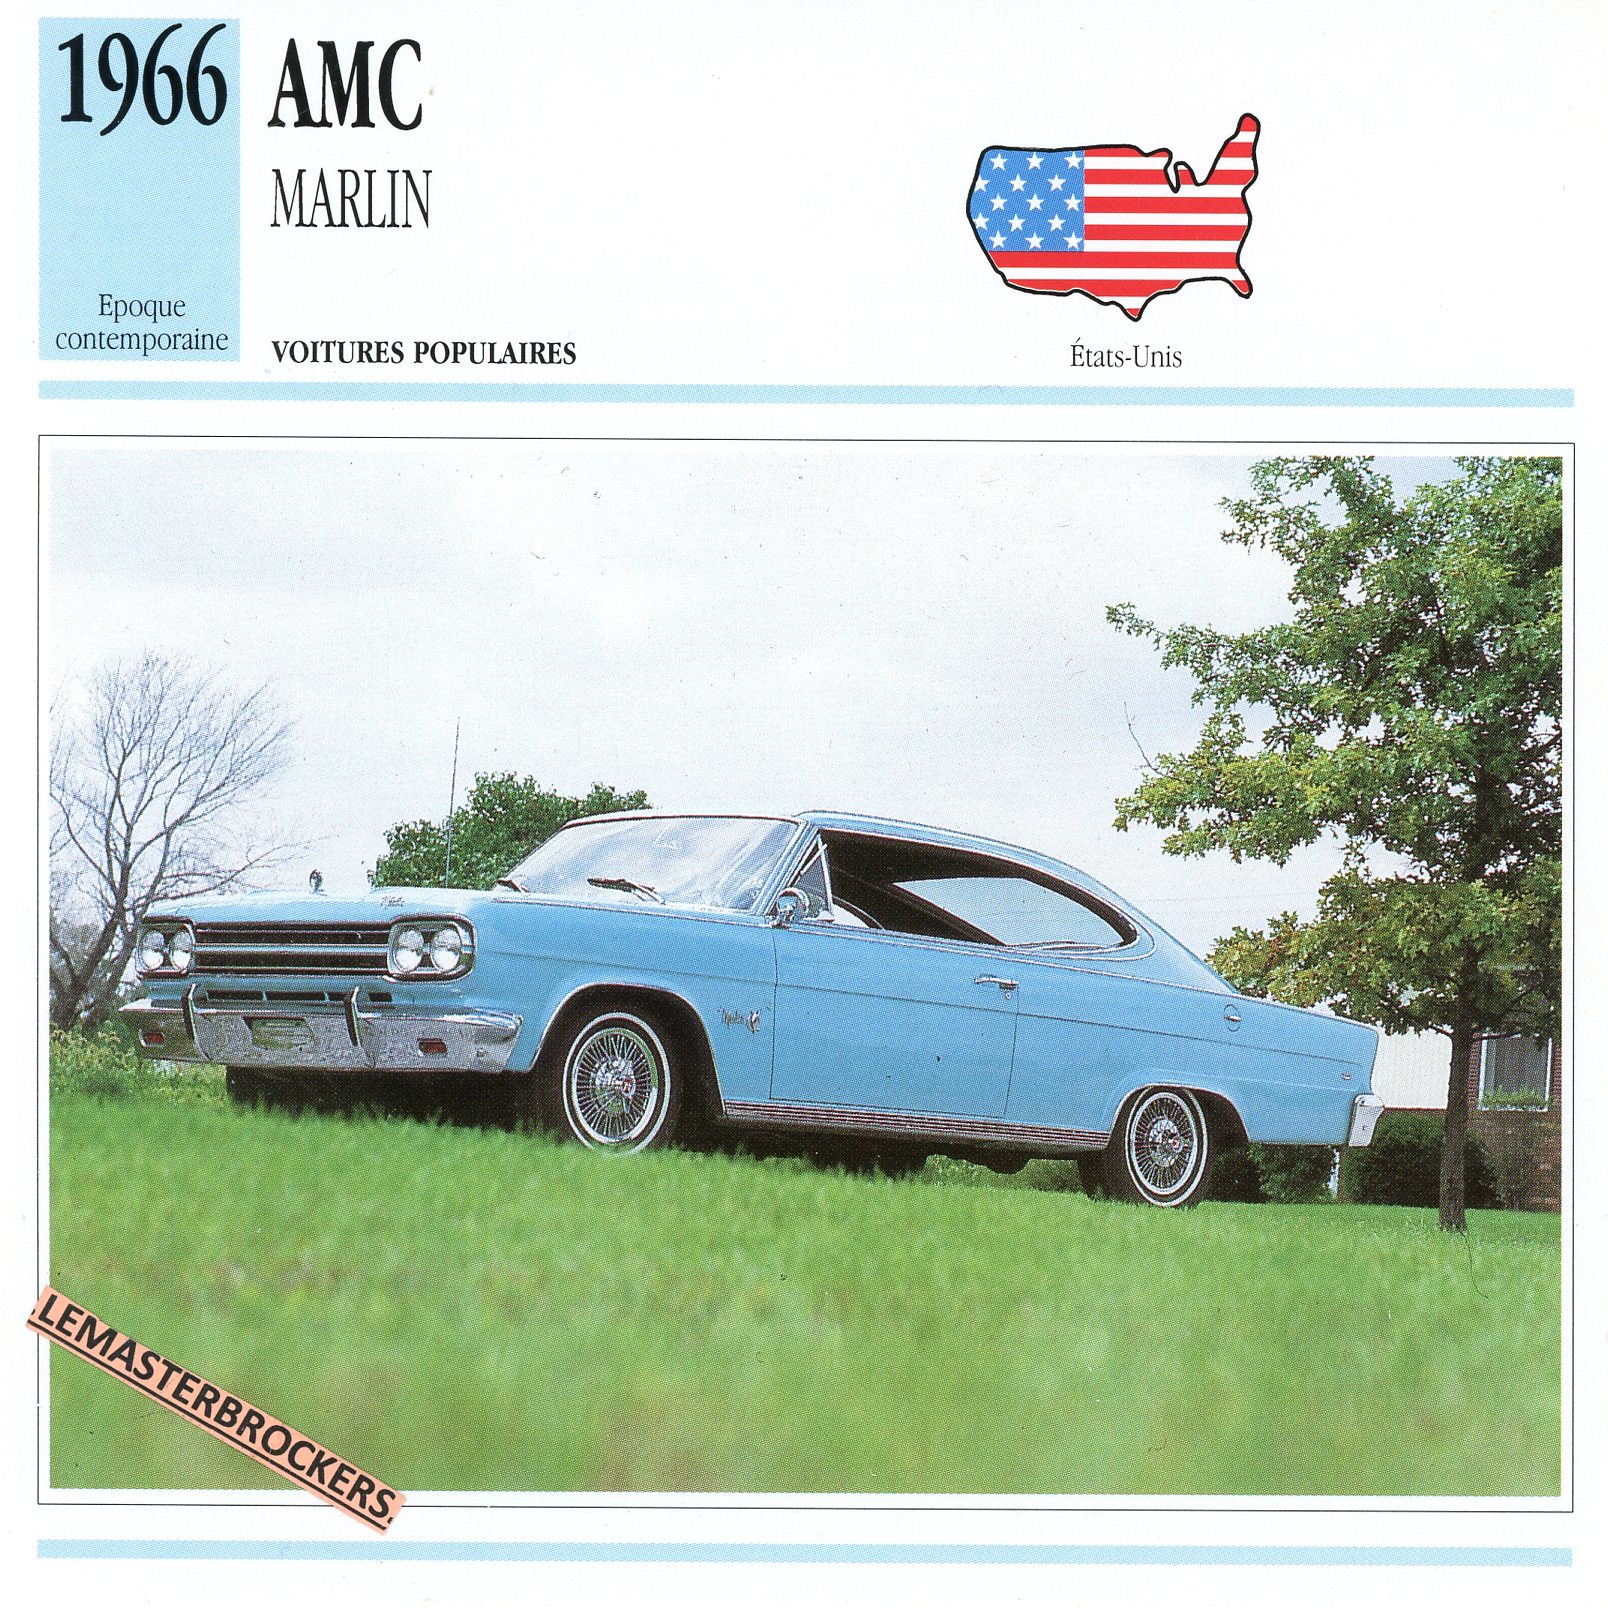 AMC MARLIN 1966 - FICHE AUTO